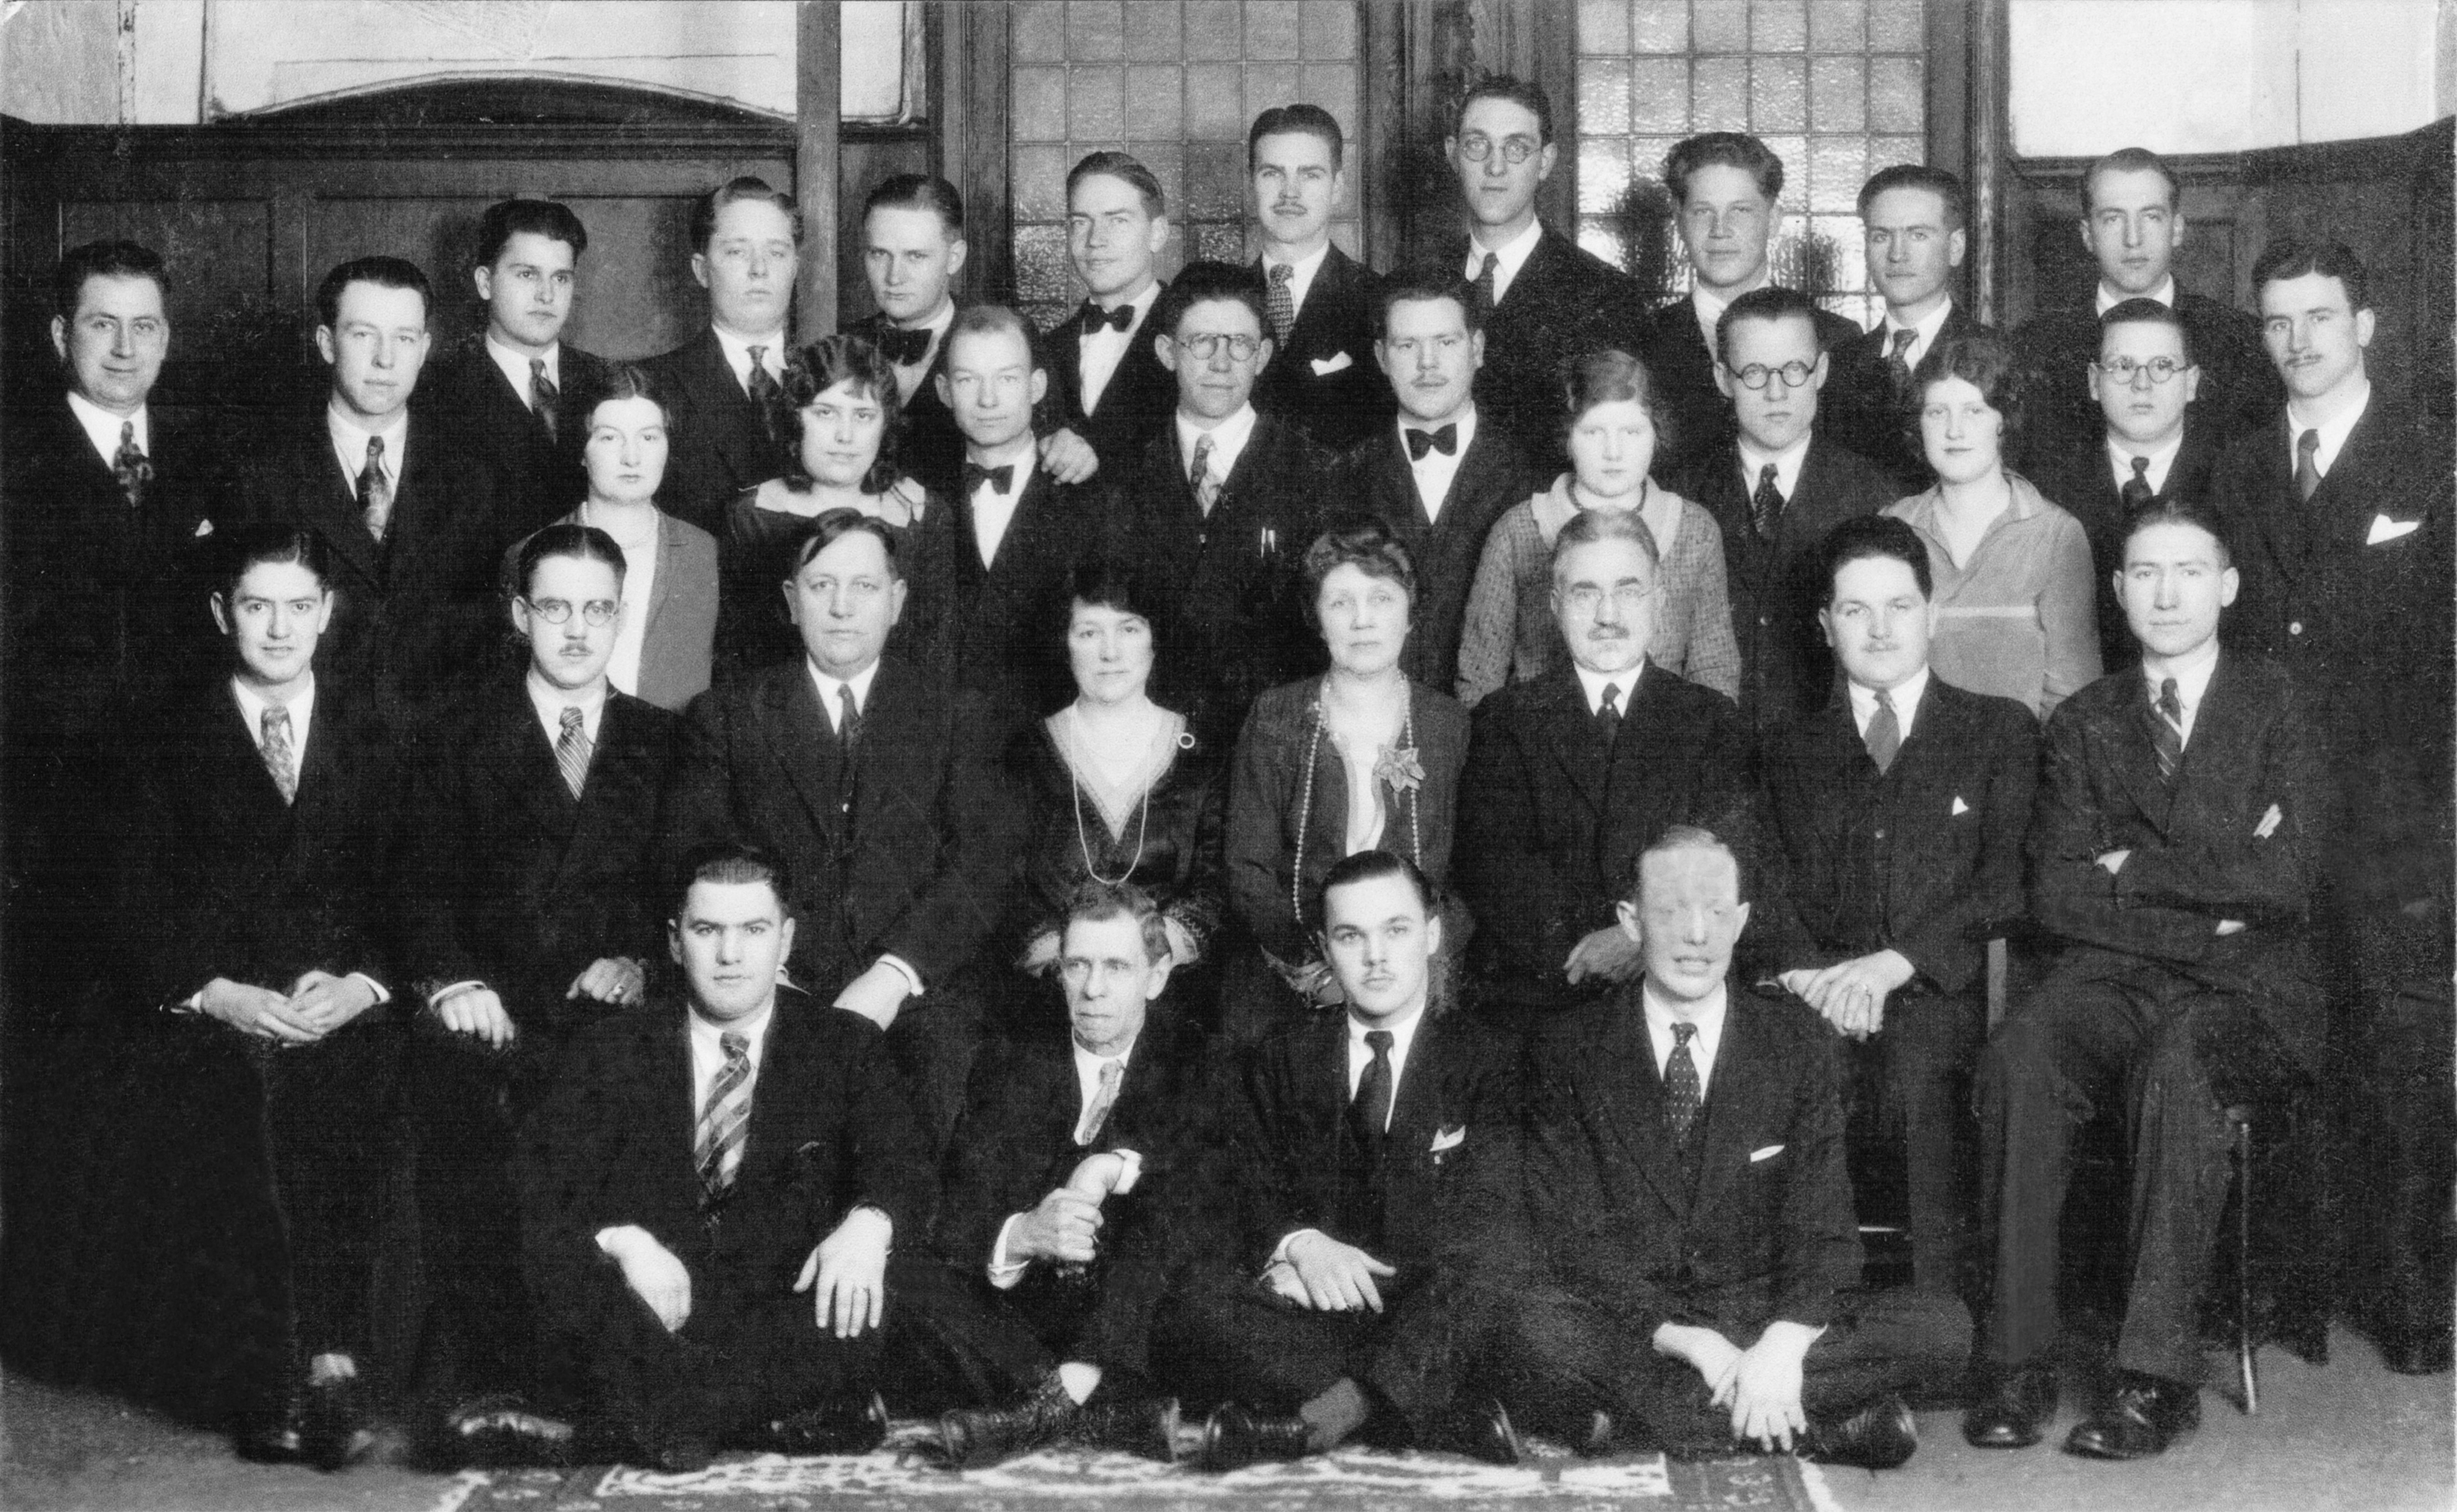 April 1930 - London District Conference